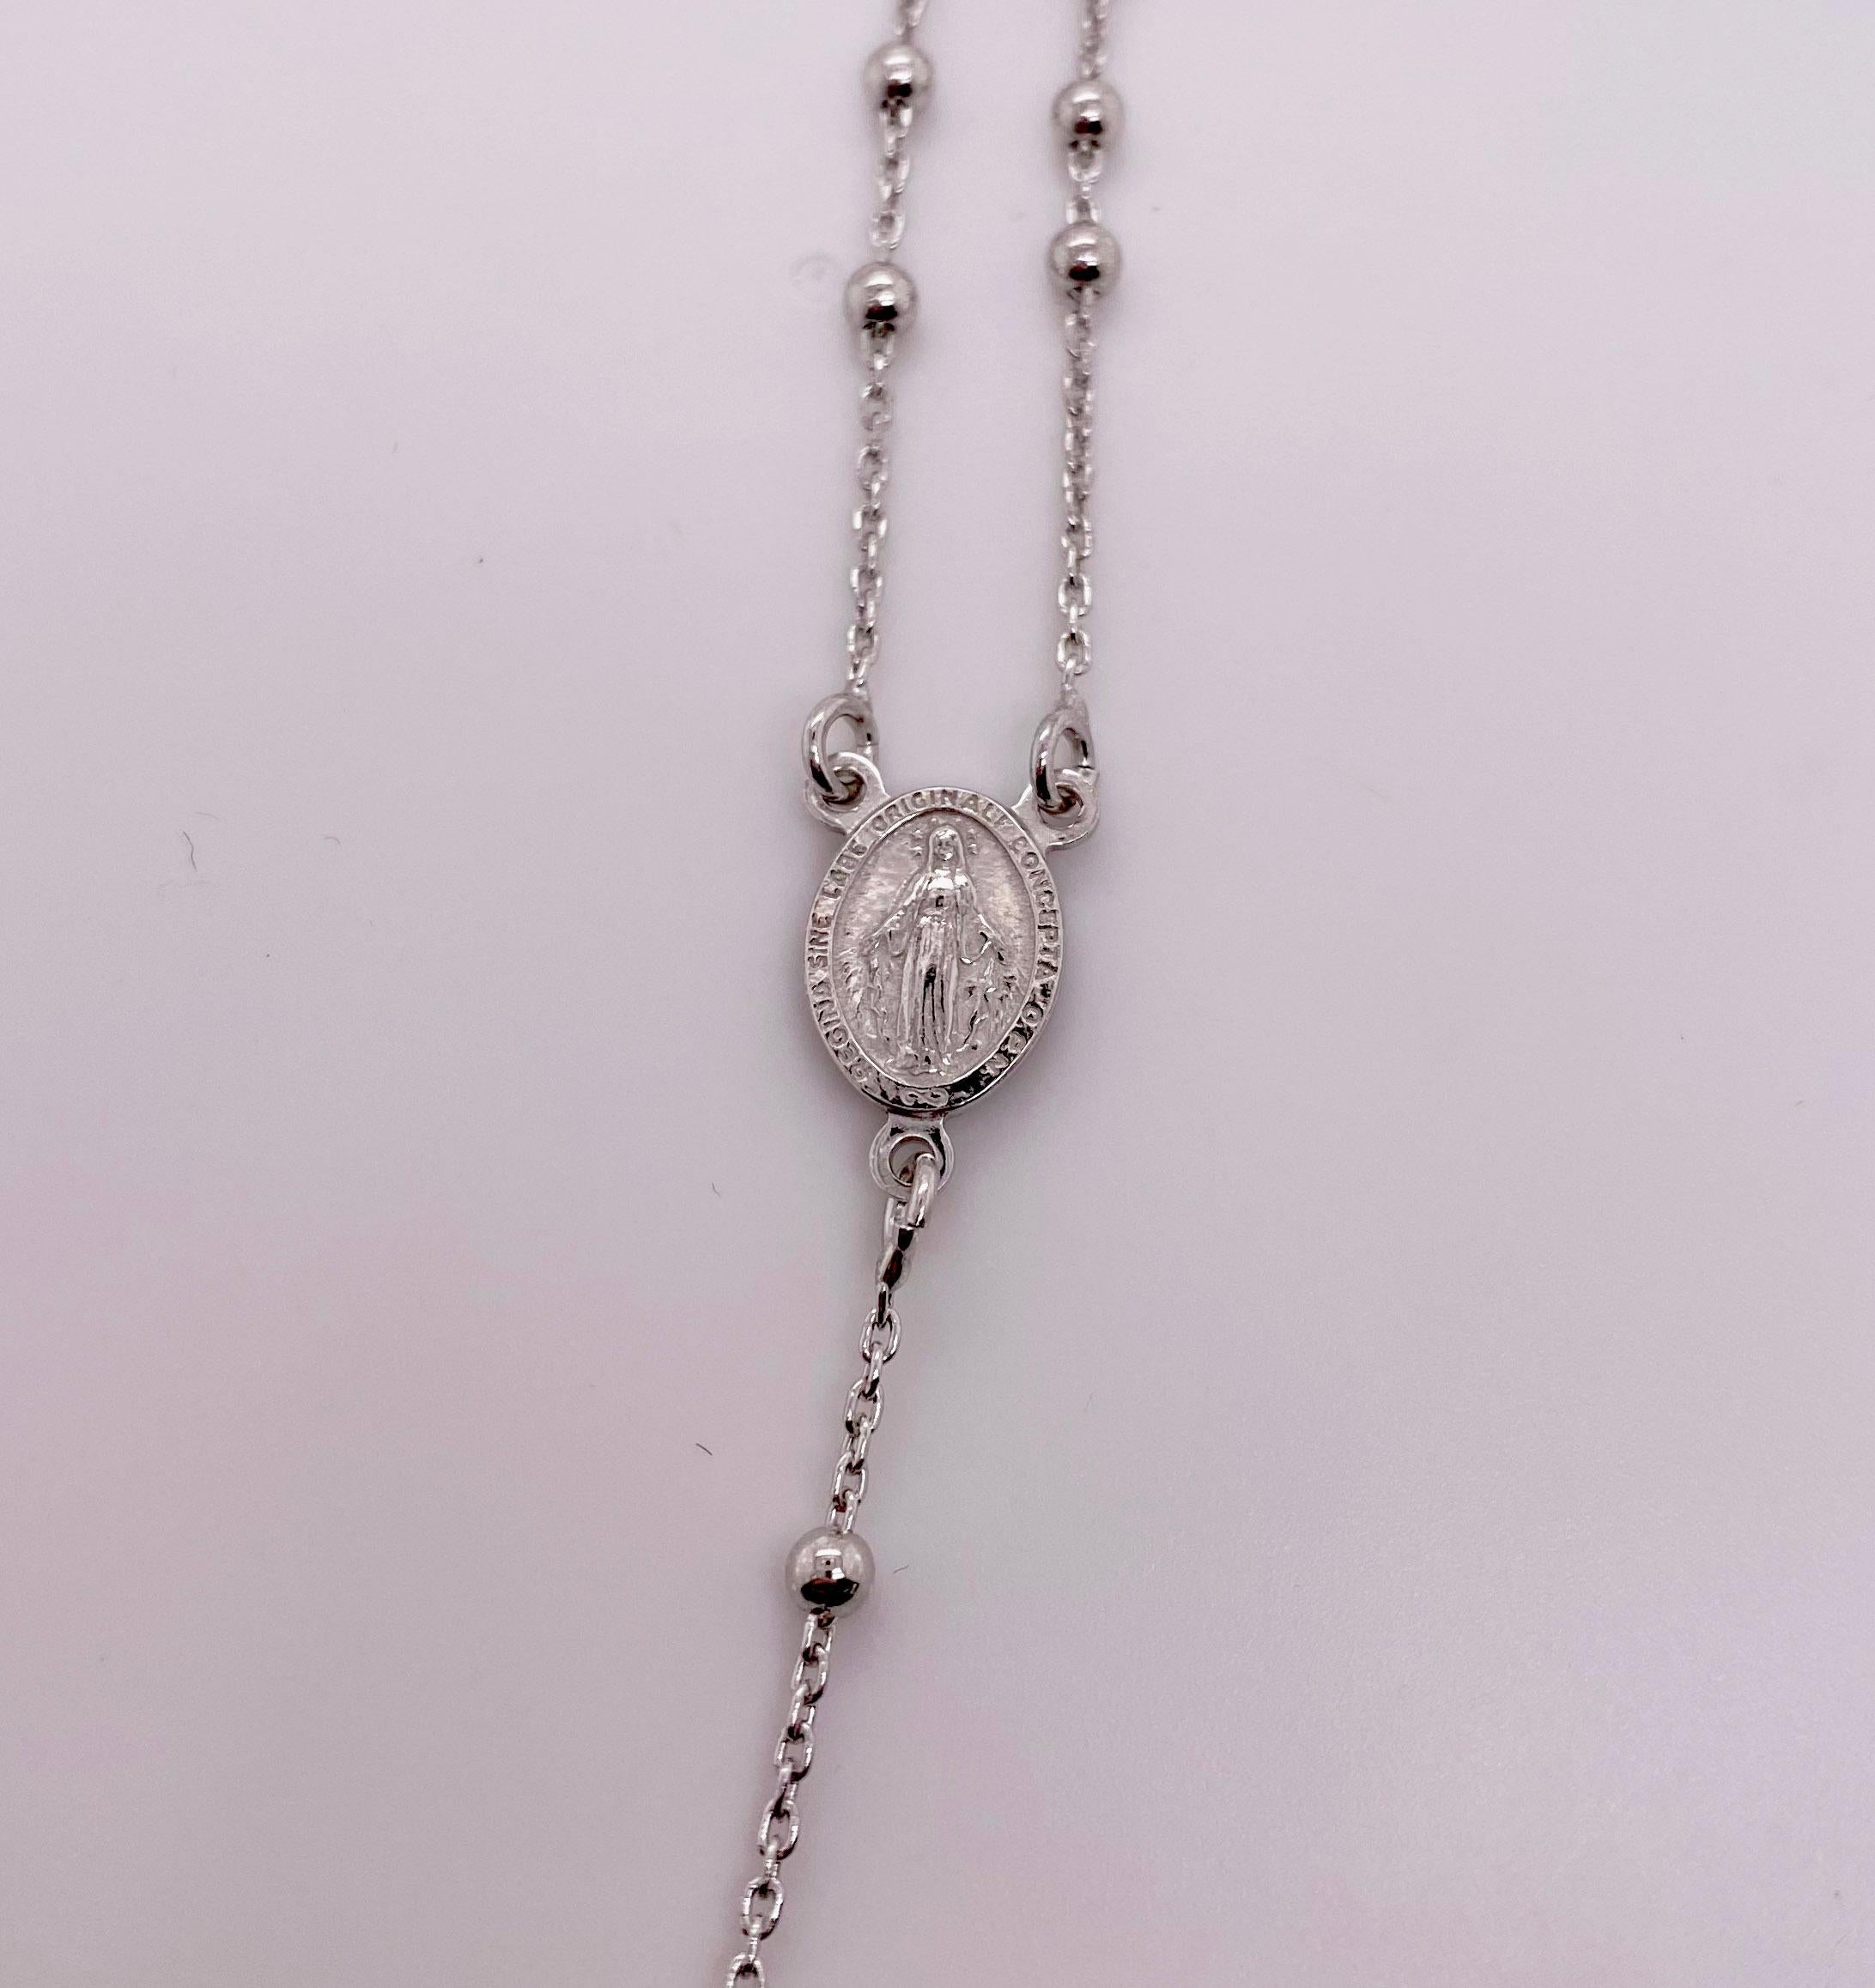 Collier de chapelet catholique en argent sterling (92,5 % d'argent pur). Ce collier est votre prière parfaite et il peut être porté autour du cou. Il y a une magnifique croix à l'extrémité du collier.
Les détails de ce magnifique collier sont